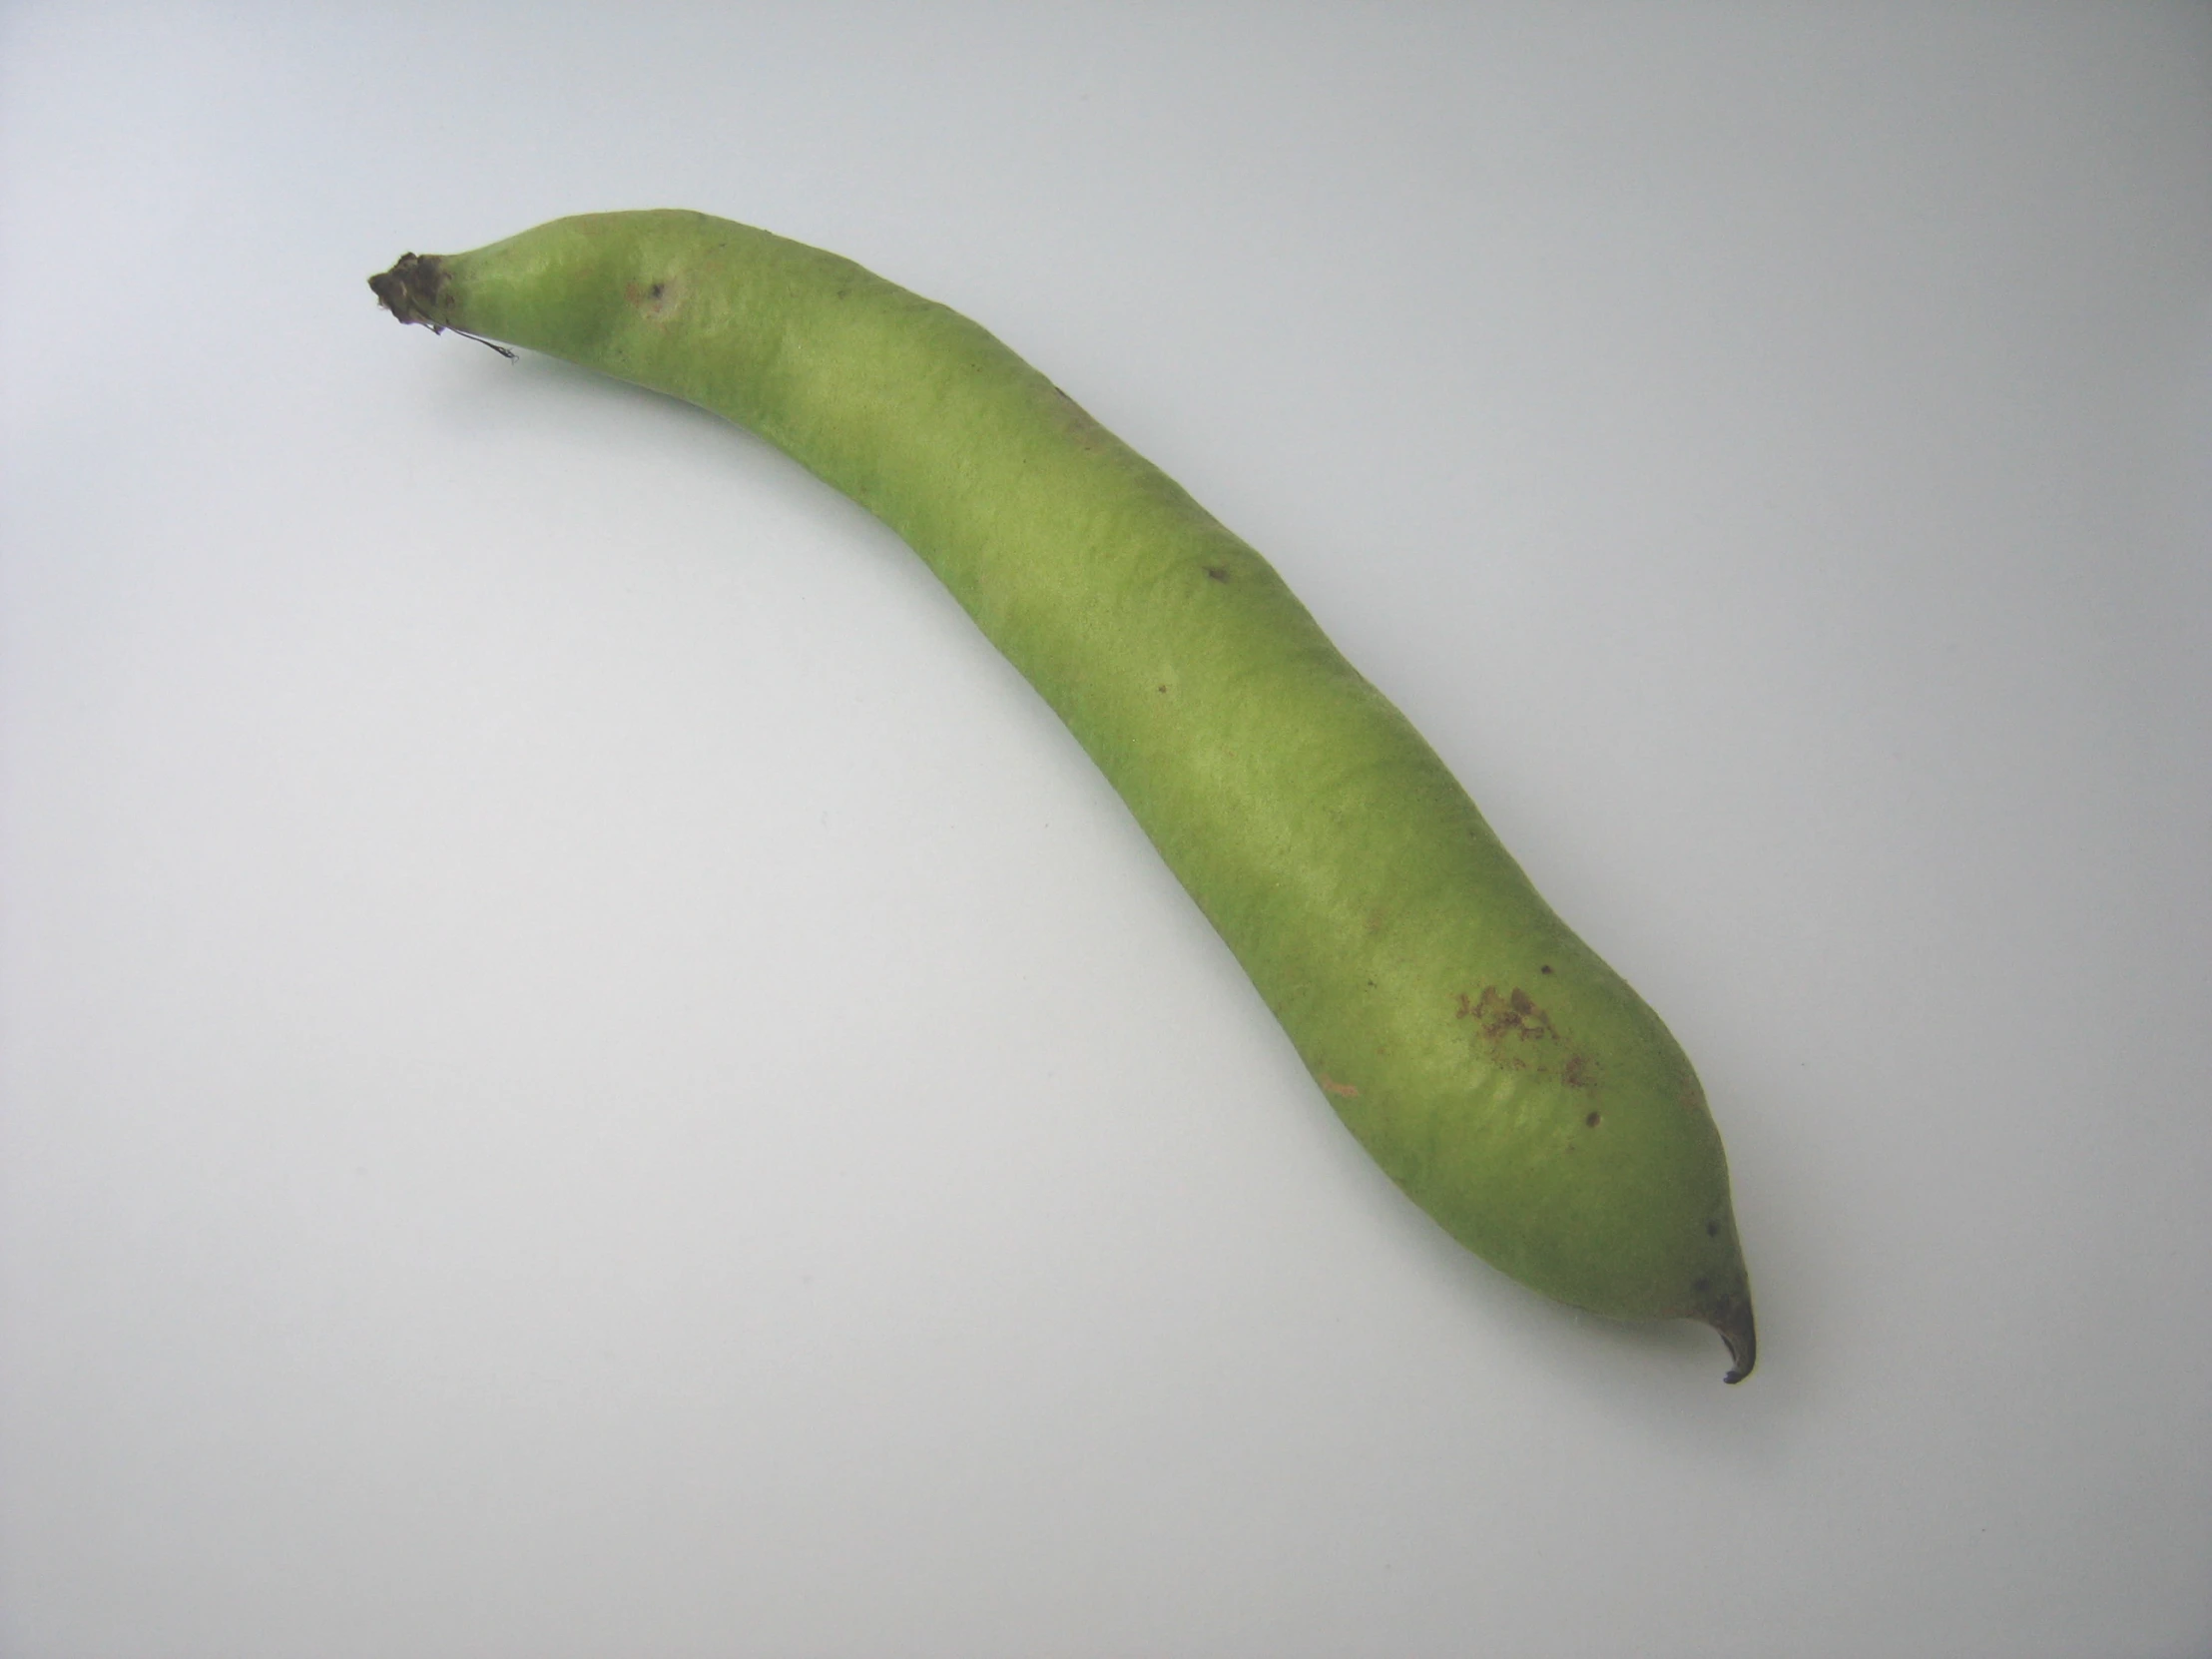 a pea pod is shown in a white po